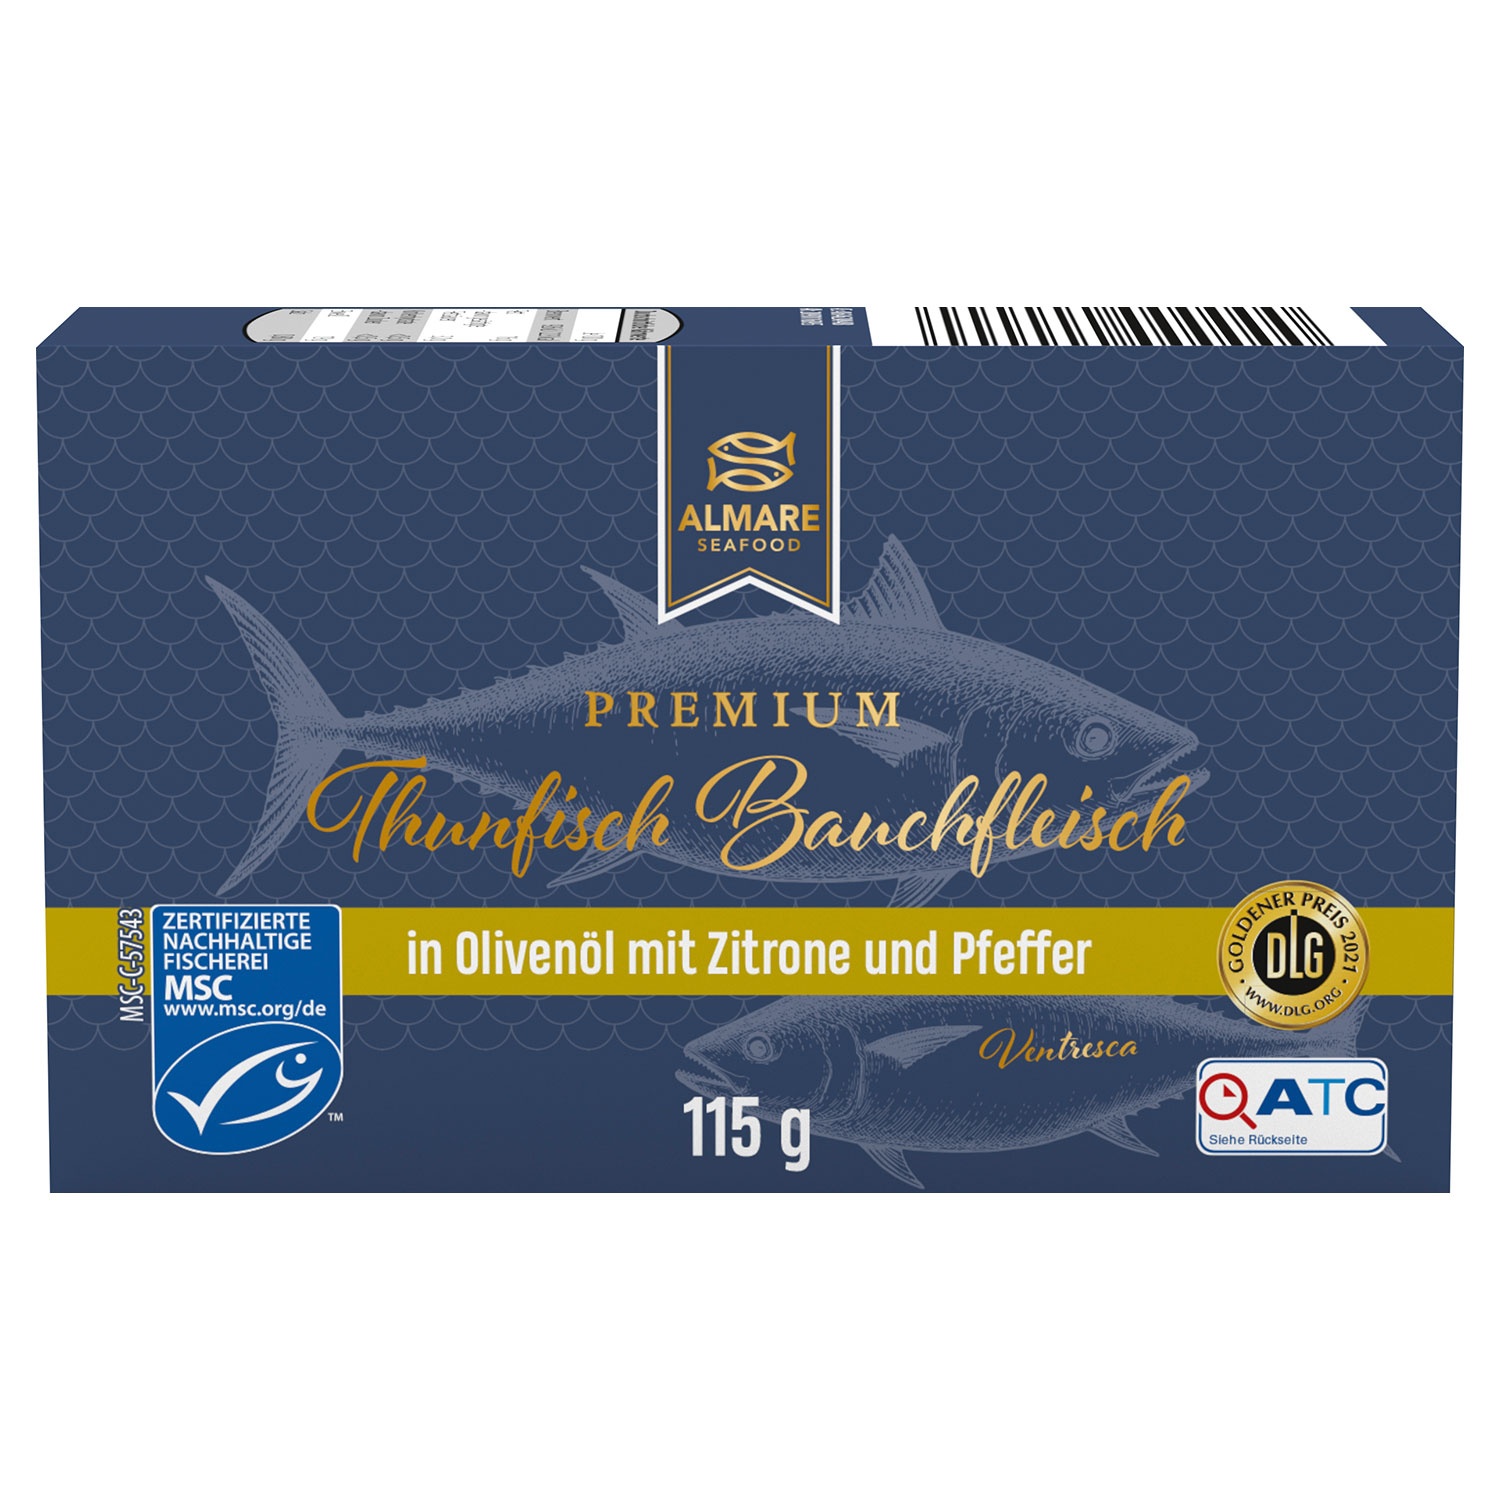 ALMARE Premium-Thunfisch-Bauchfleisch 115 g